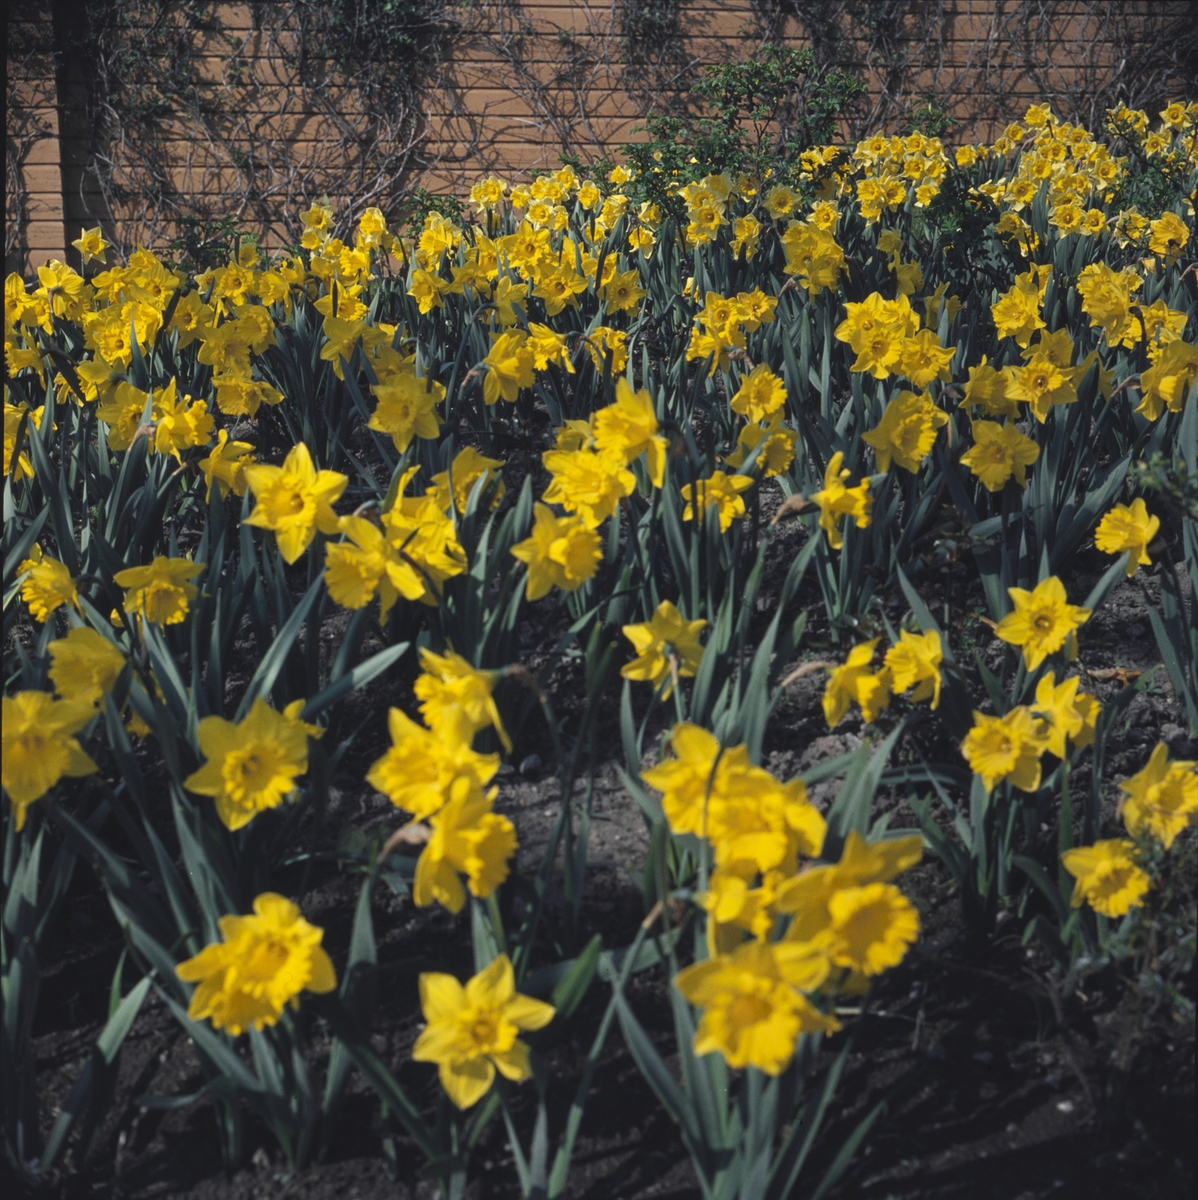 Blommande påskliljor i Rosenträdgårdens rabatt.